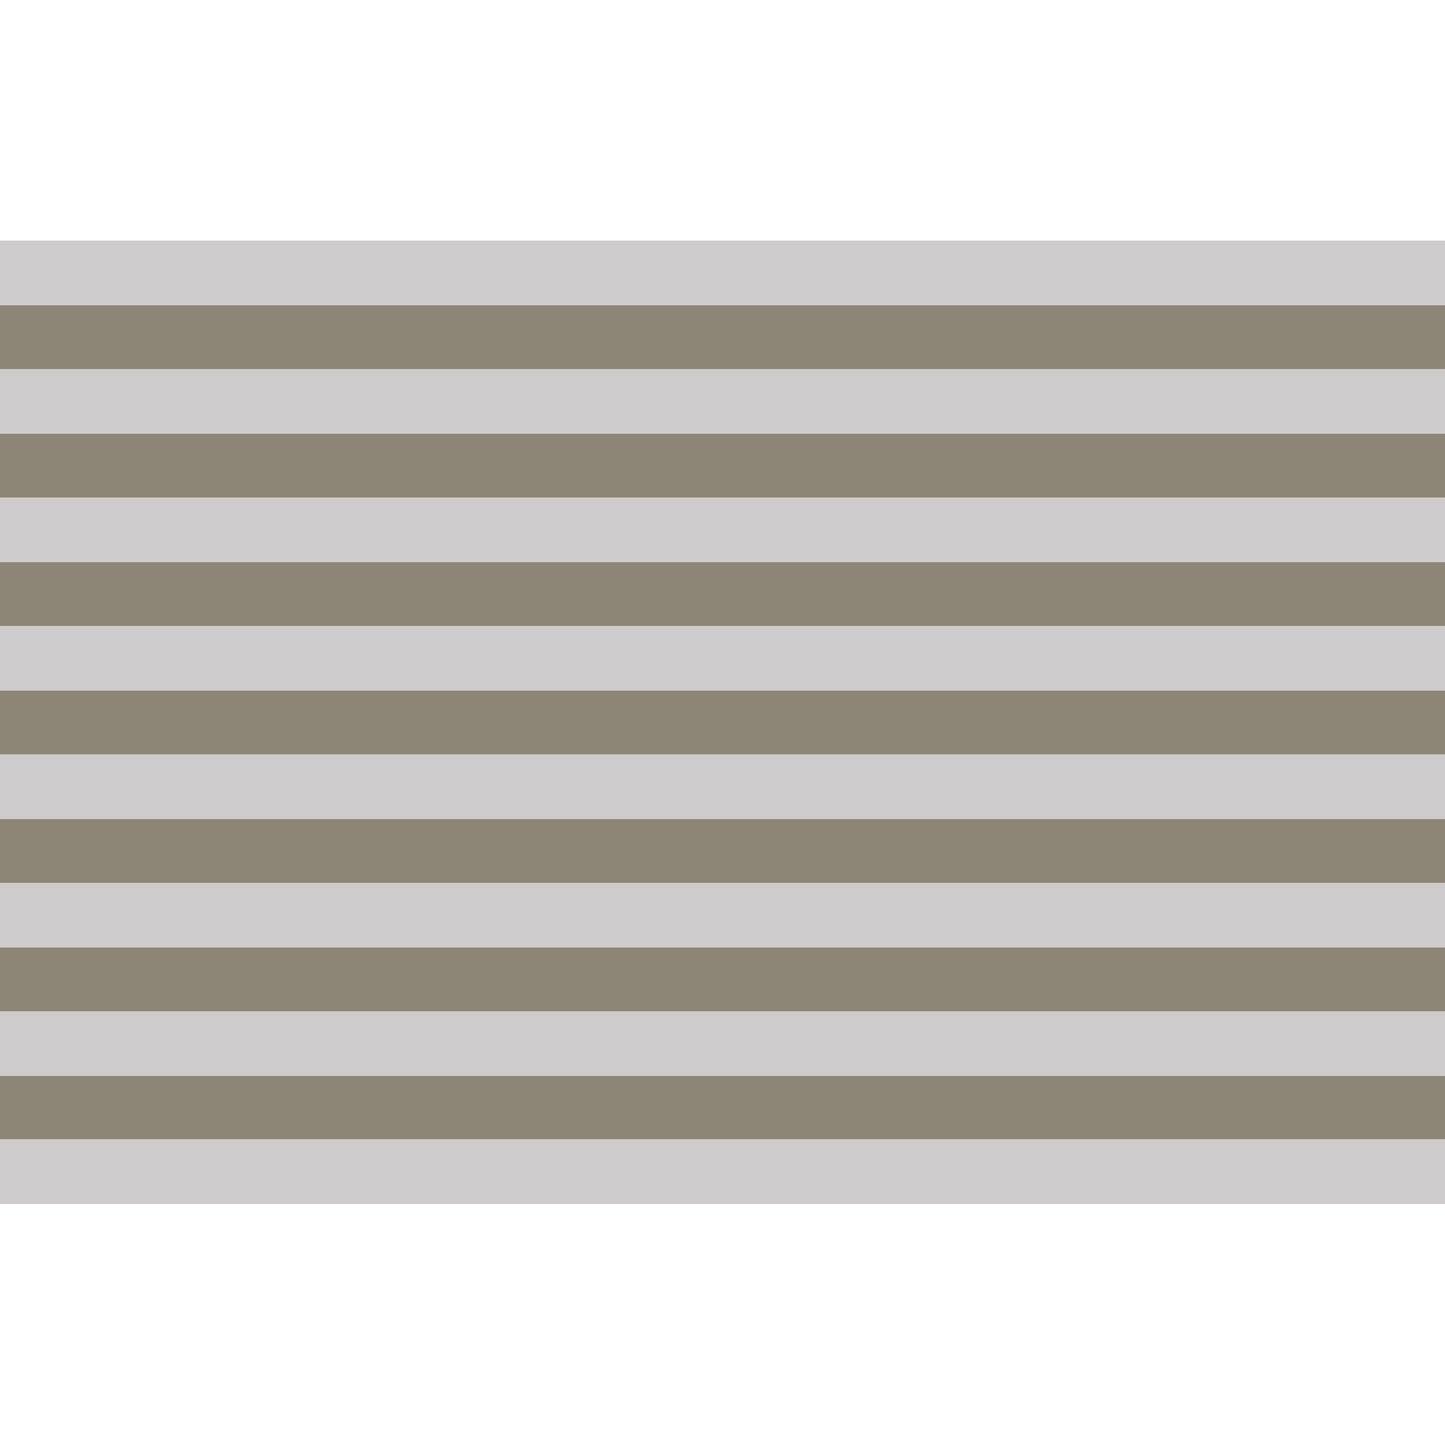 Spritzschutz - Striped Bright Brown